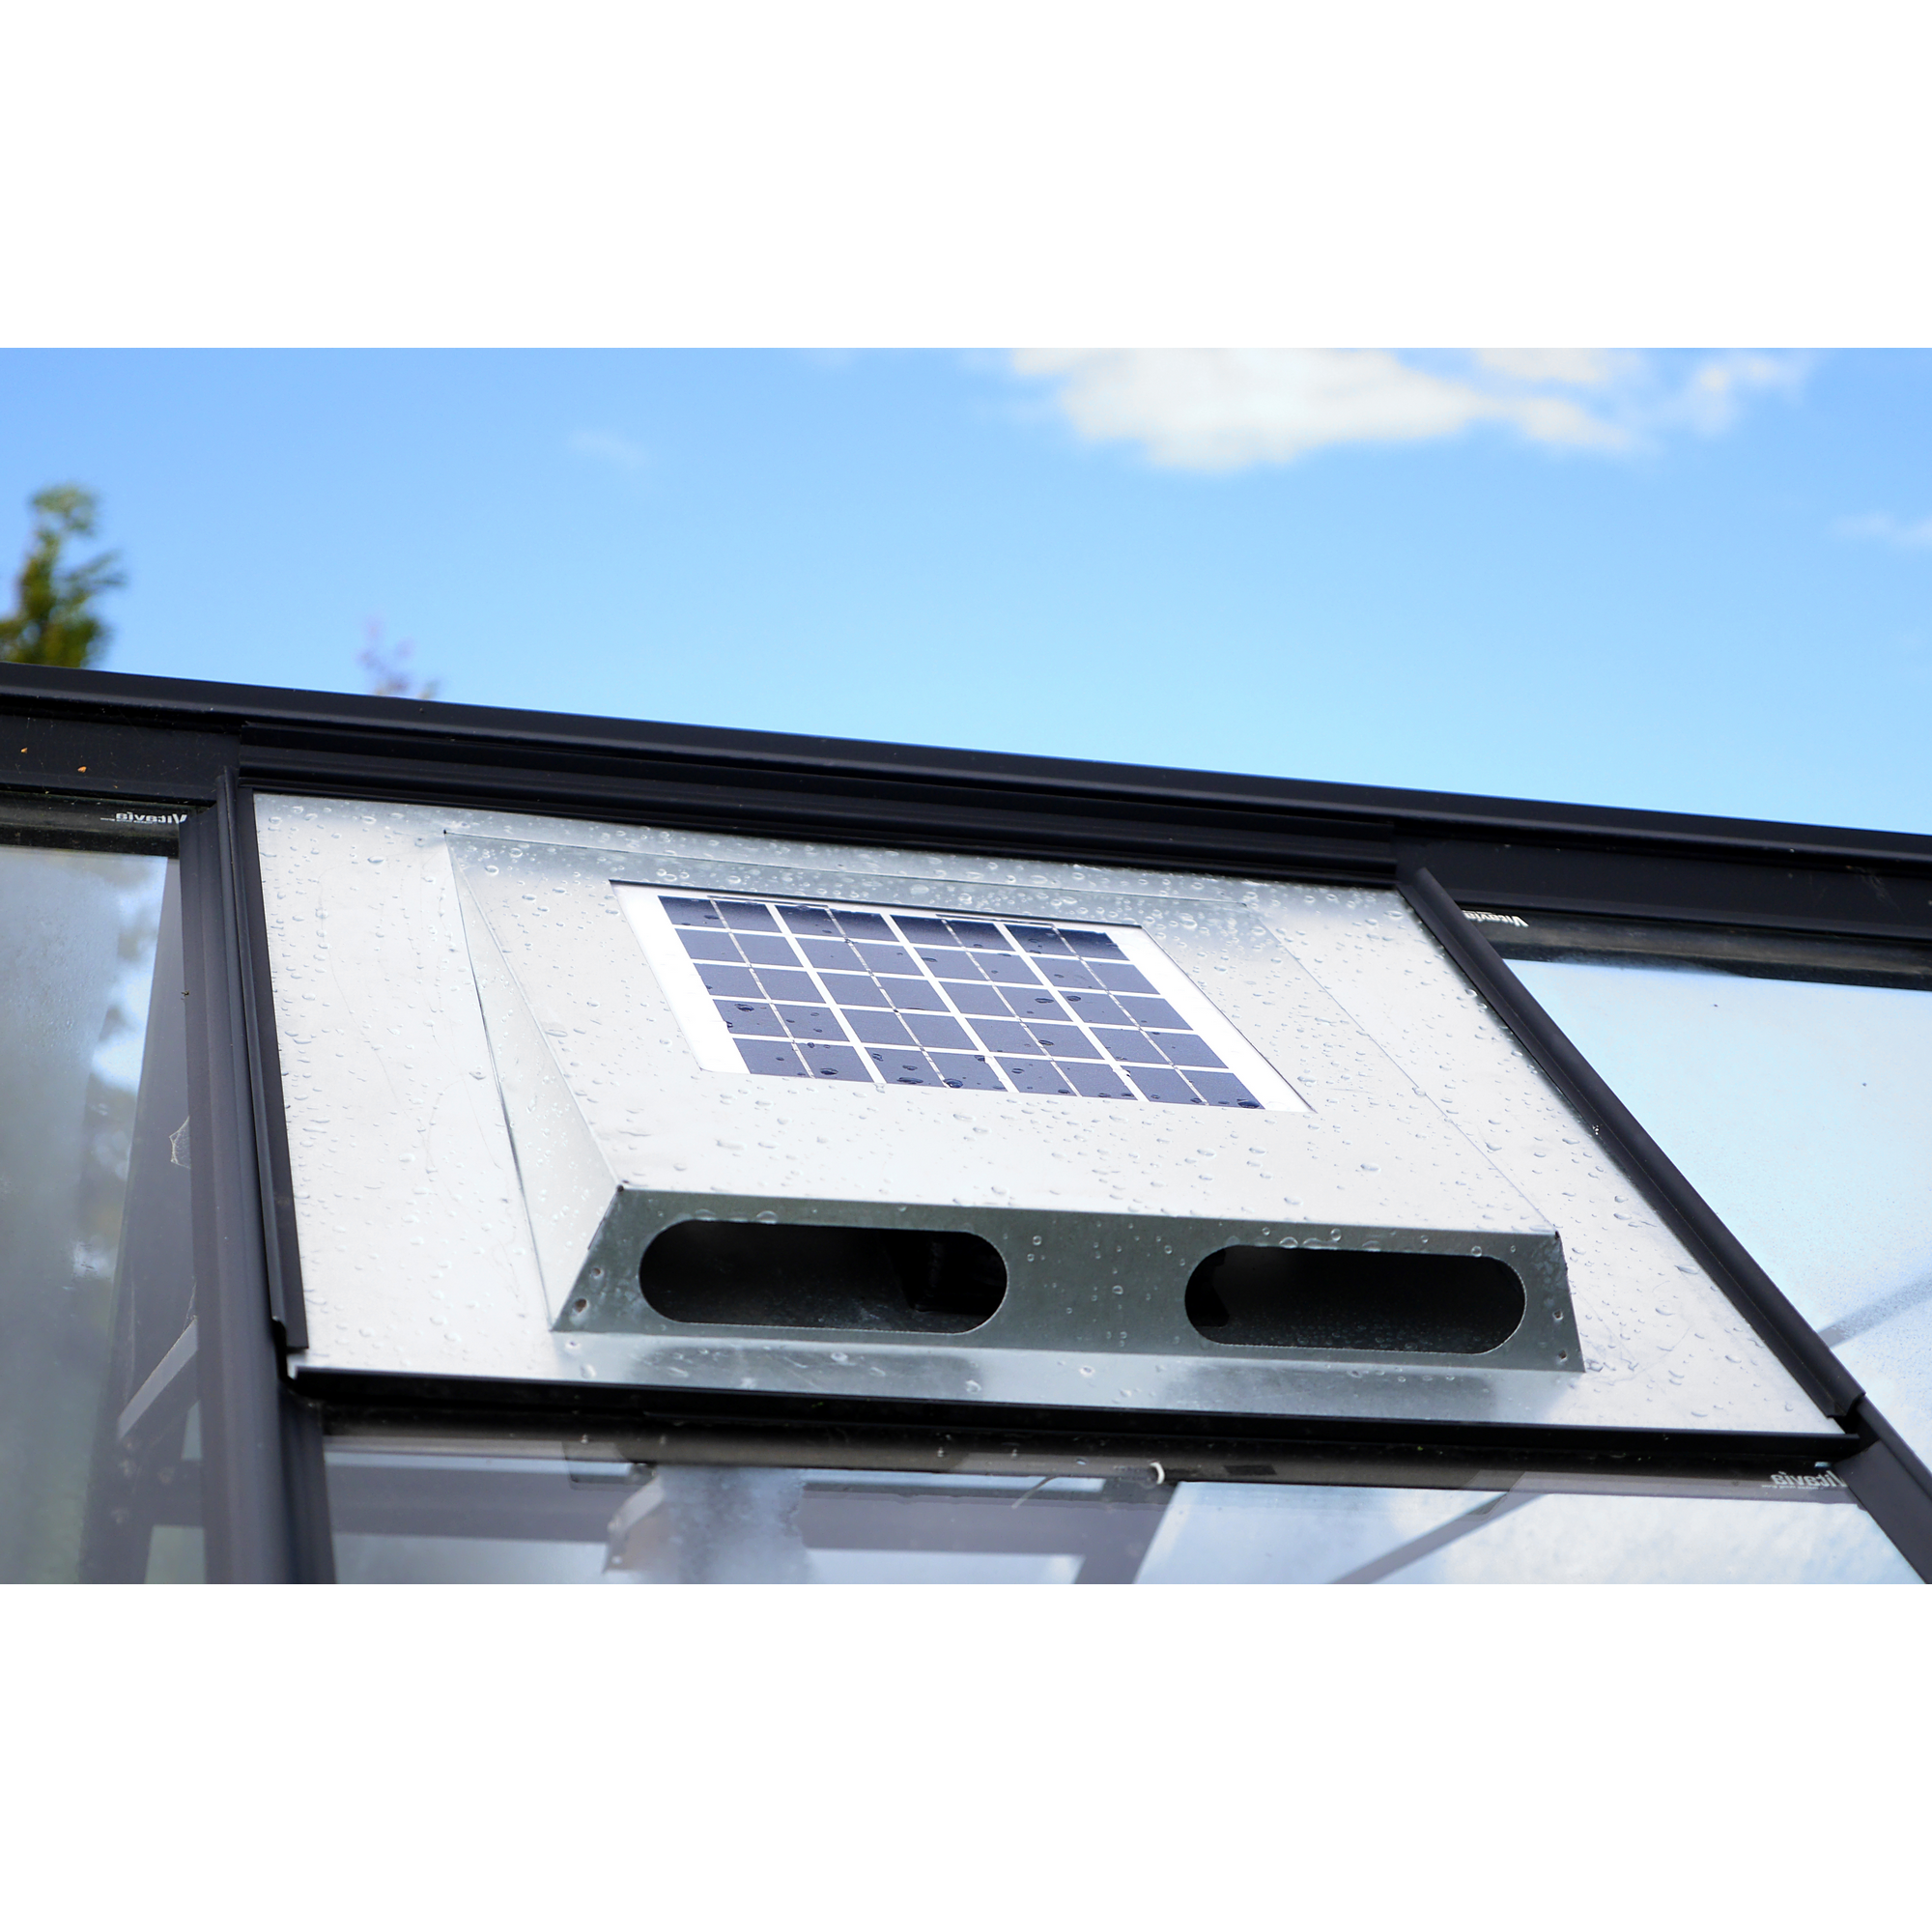 Solar-Dachventilator für Gewächshäuser 87 x 55,5 x 5,5 cm + product picture